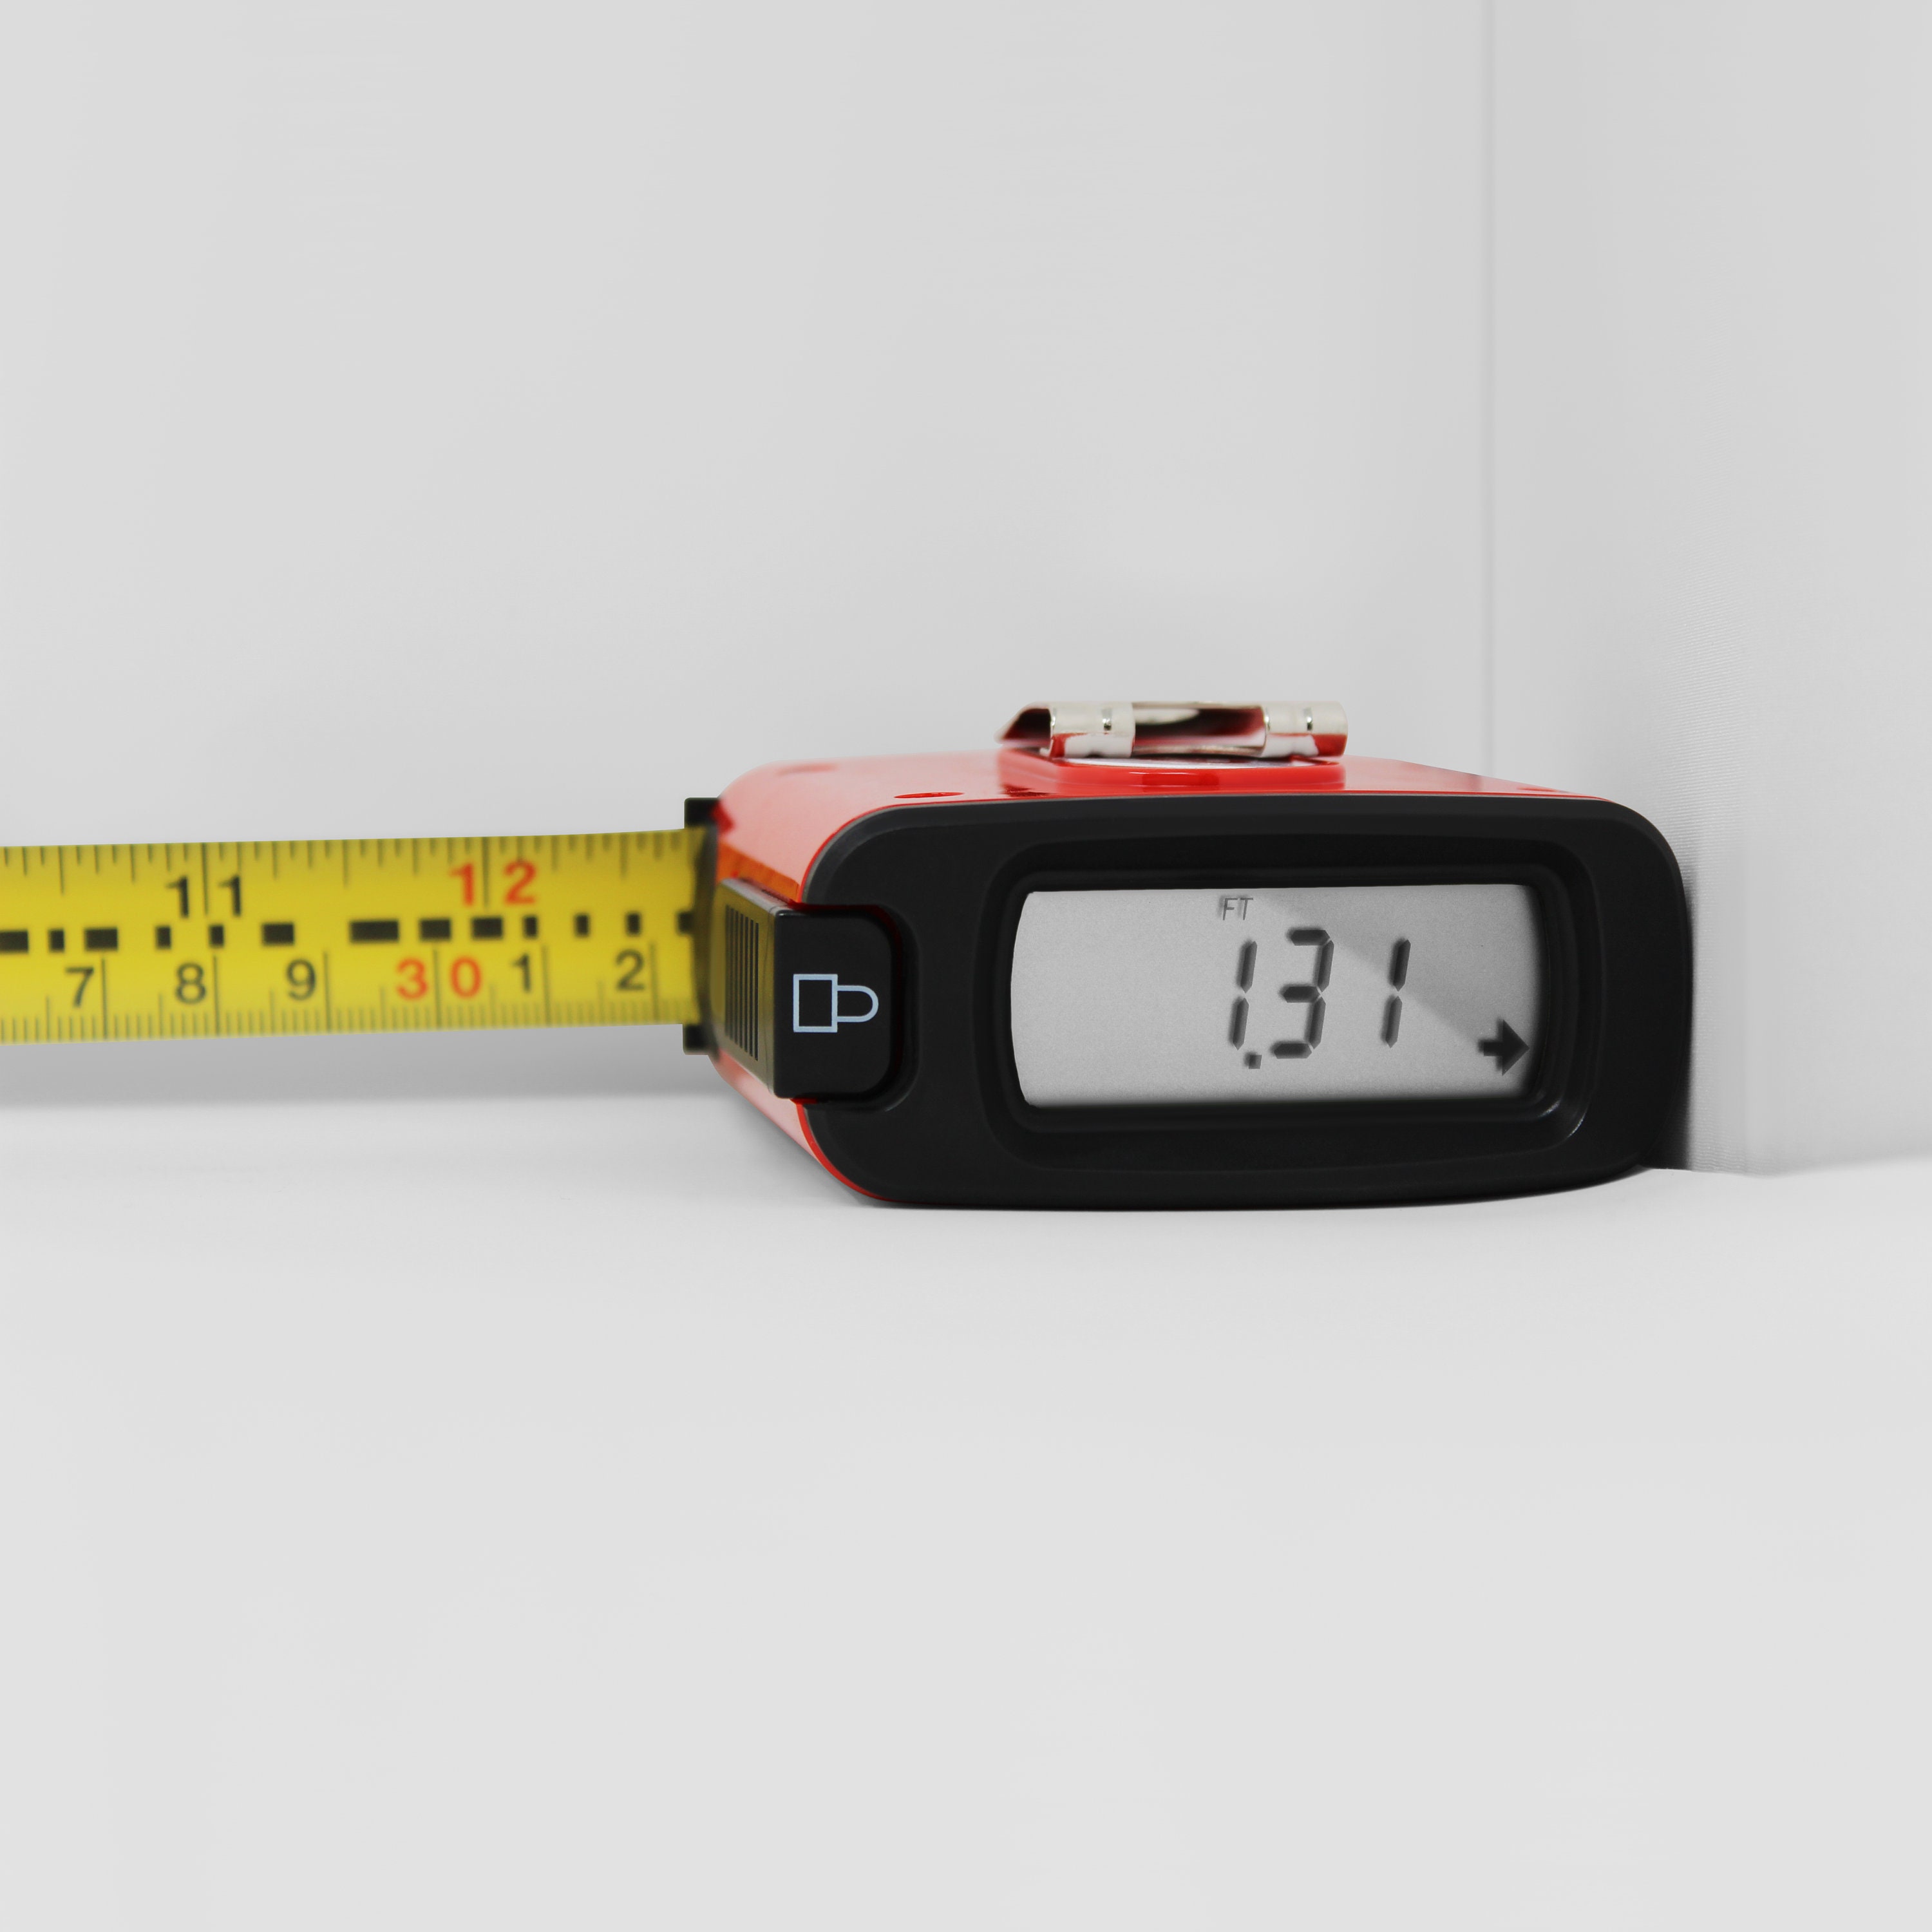 Cinta métrica láser 2 en 1, medida láser de 196 pies, cinta métrica de 16  pies y unidades estadounidenses con pantalla digital LCD, gancho magnético